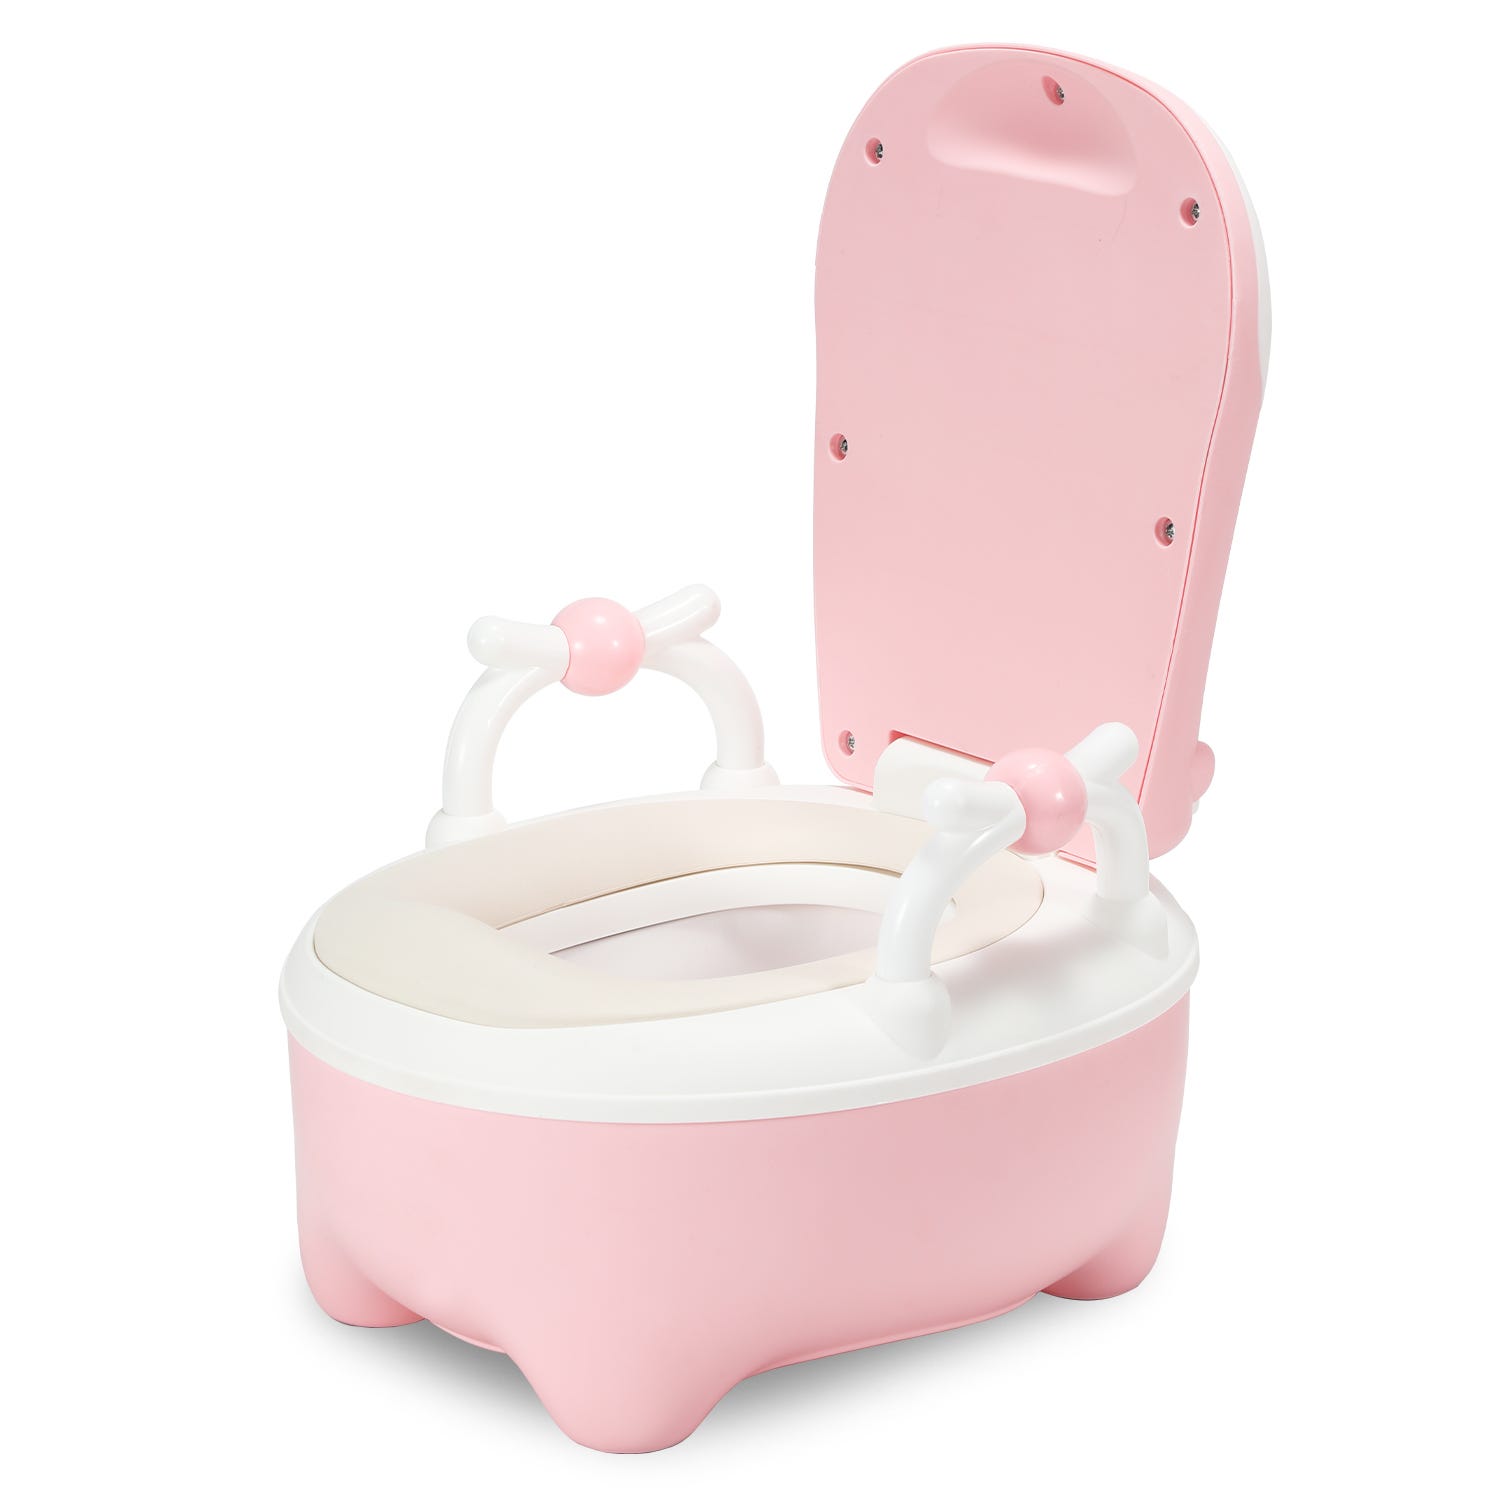 Pot d'apprentissage - Toilette Bébé avec Poignées